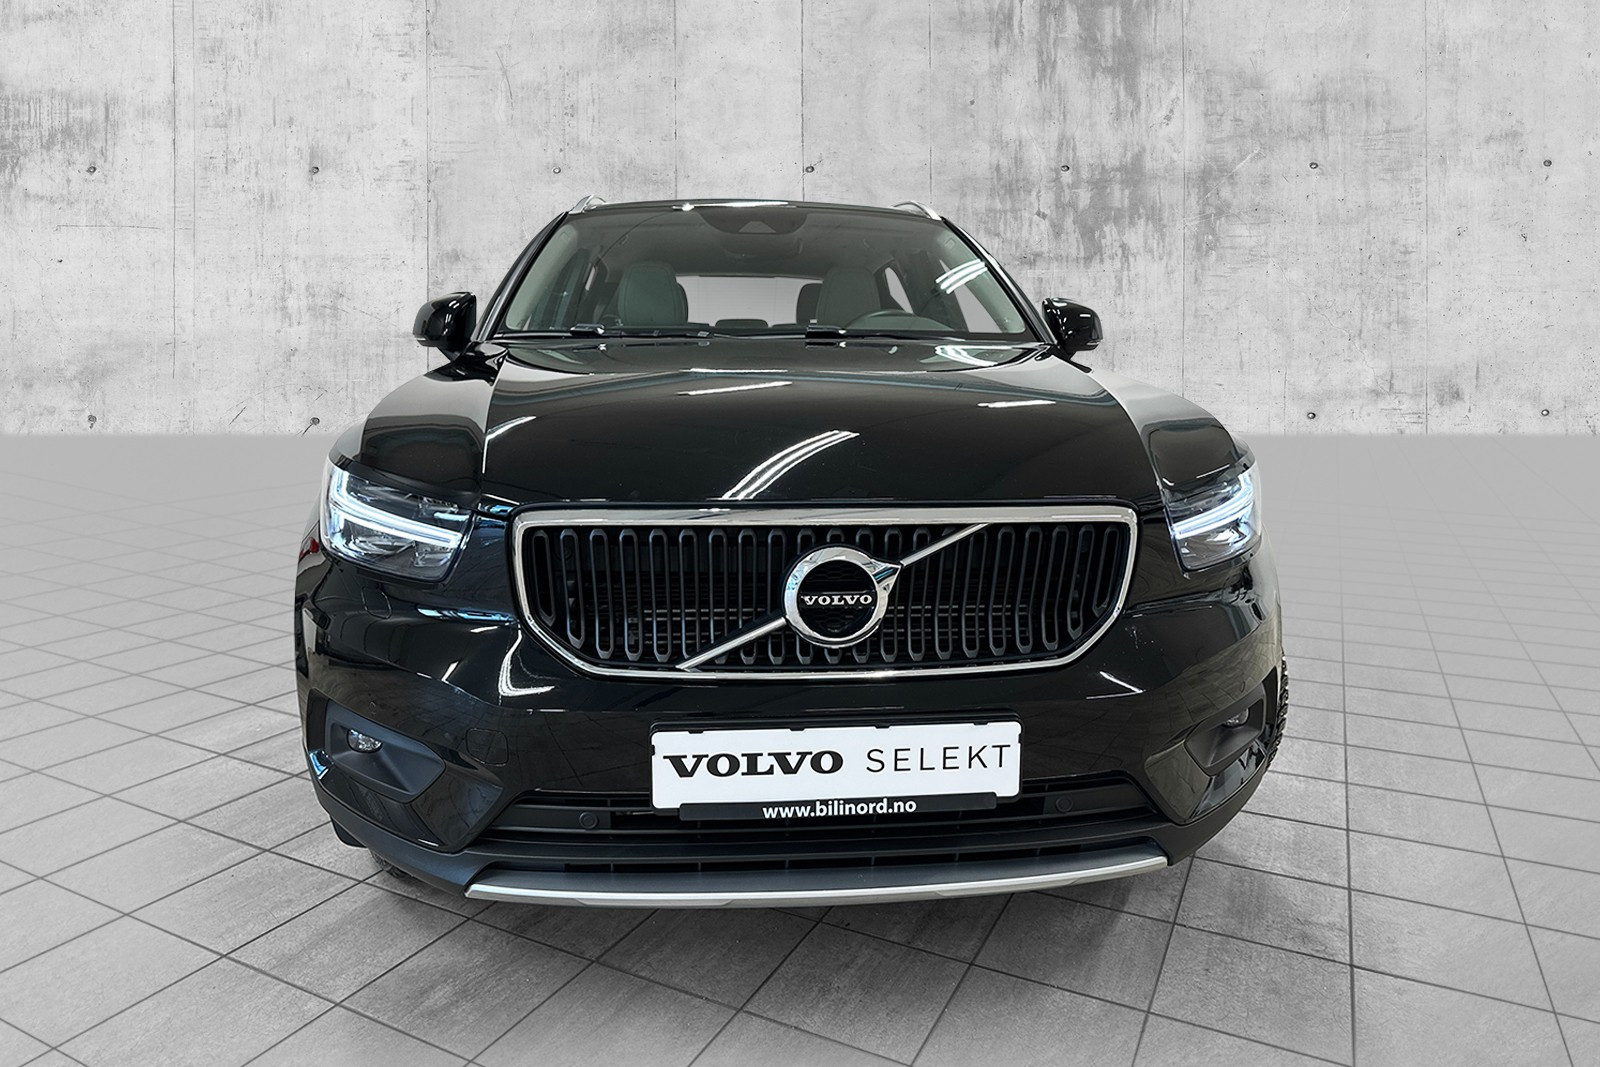 Denne bilen er Volvo Selekt sertifisert med garanti inntil 7 år / 150.000 km